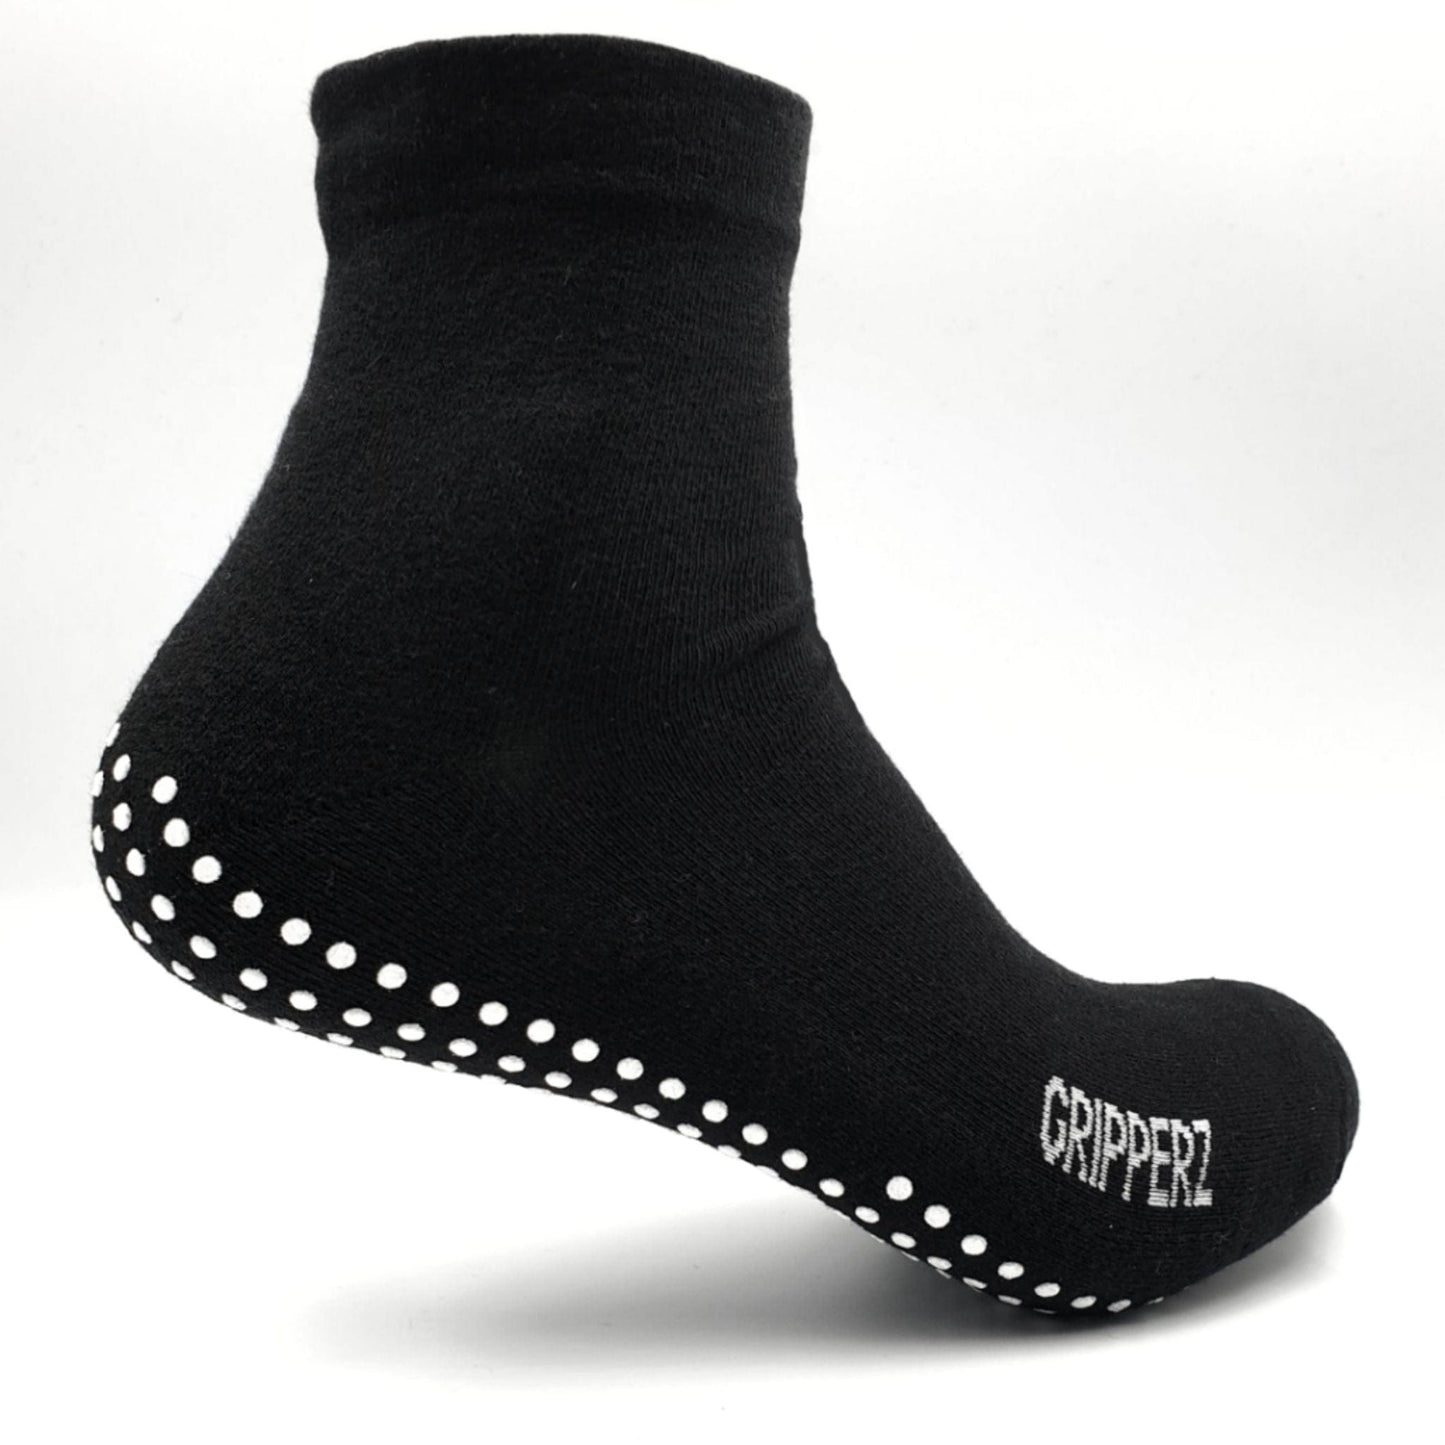 Gripperz Adult Grip Socks, Non Slip Ankle Socks